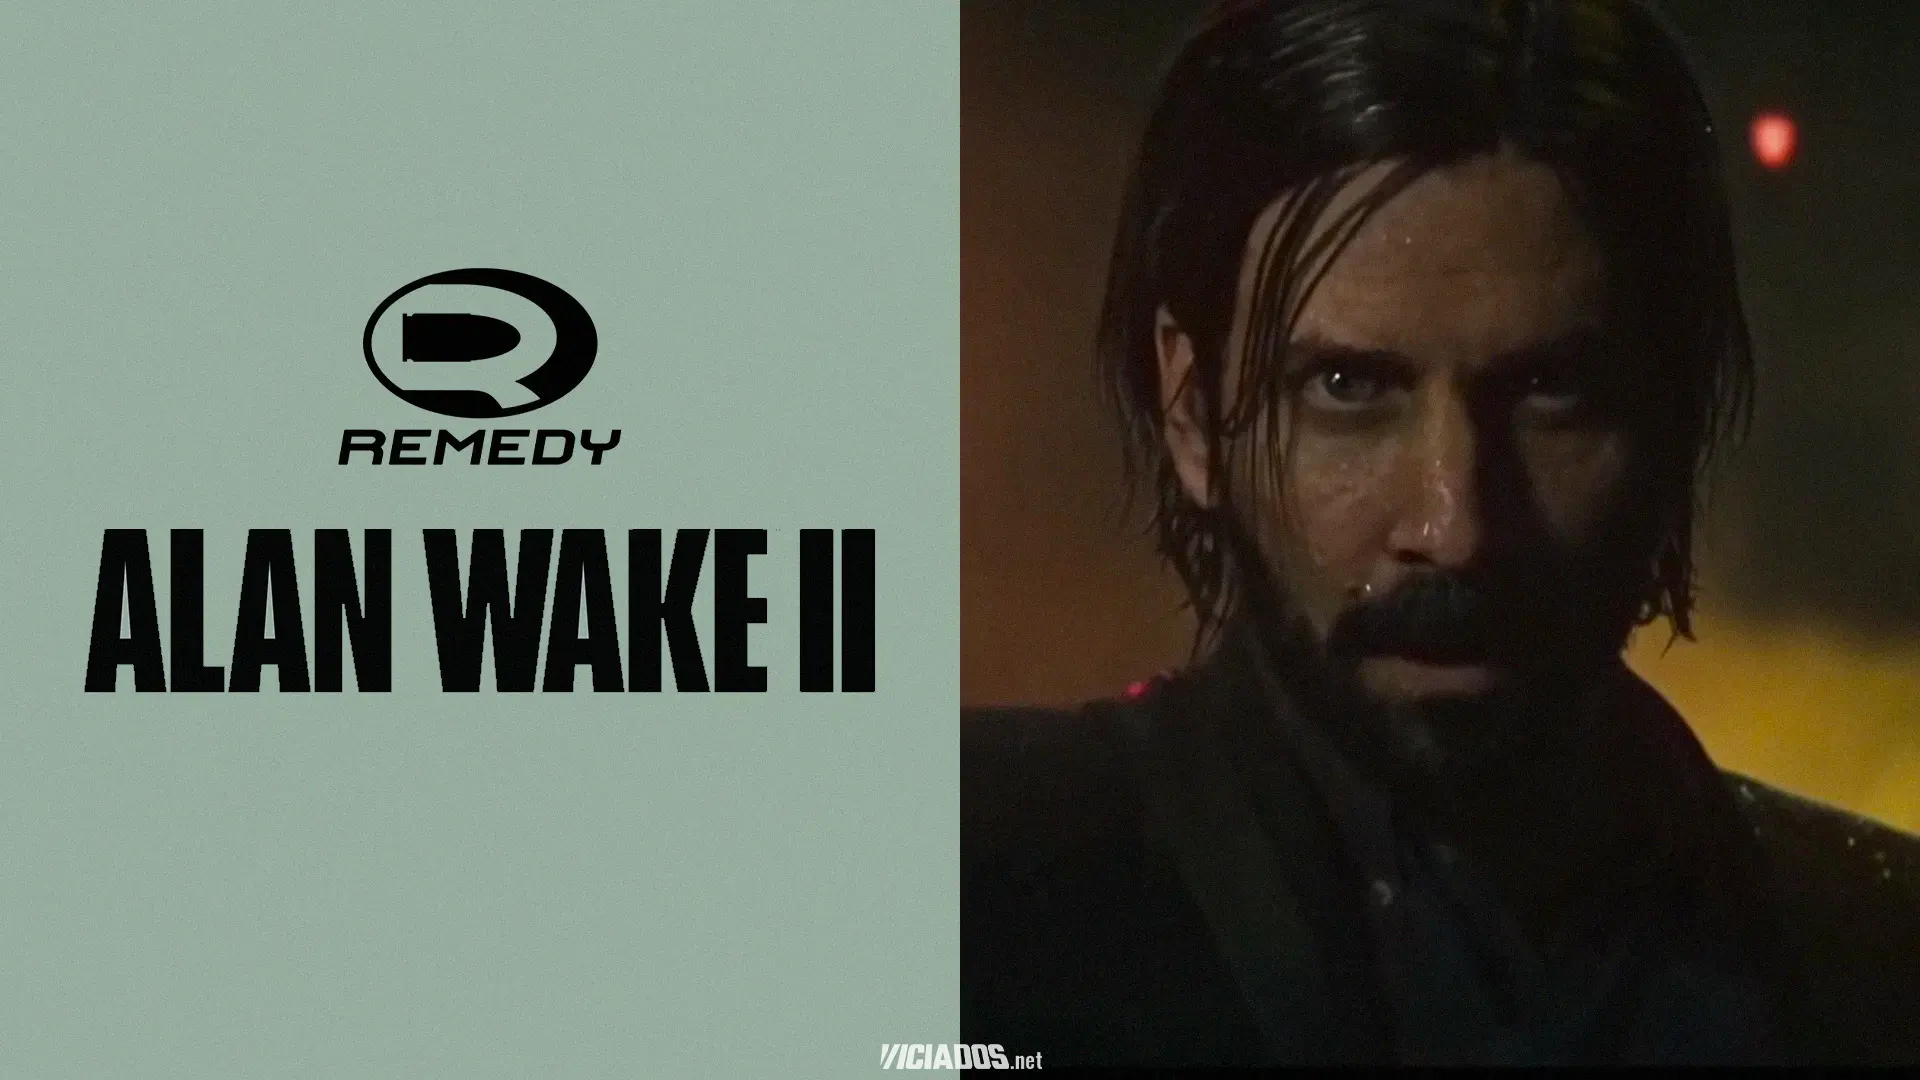 Alan Wake 2 | Remedy revela janela de lançamento da sequência 2023 Viciados